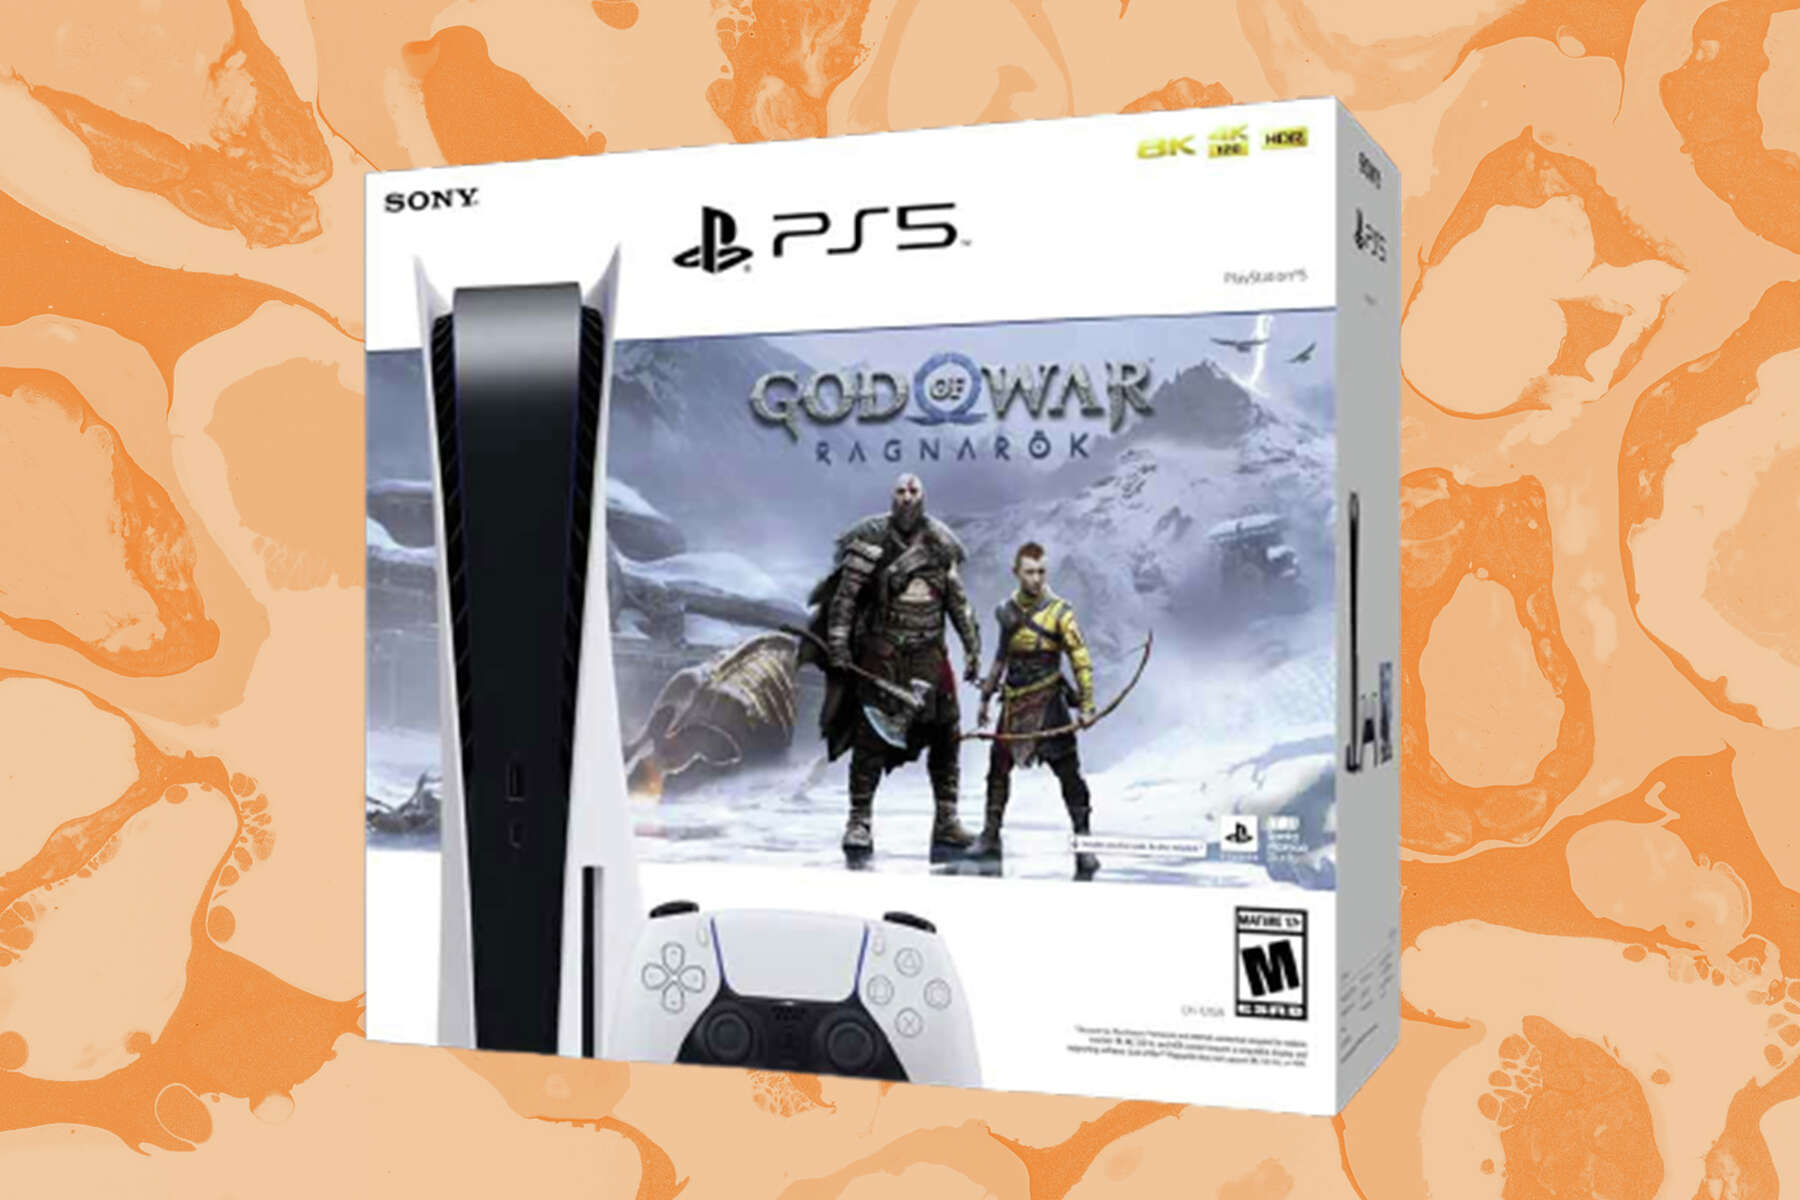 PS5 God of War: Ragnarok bundle is $60 off